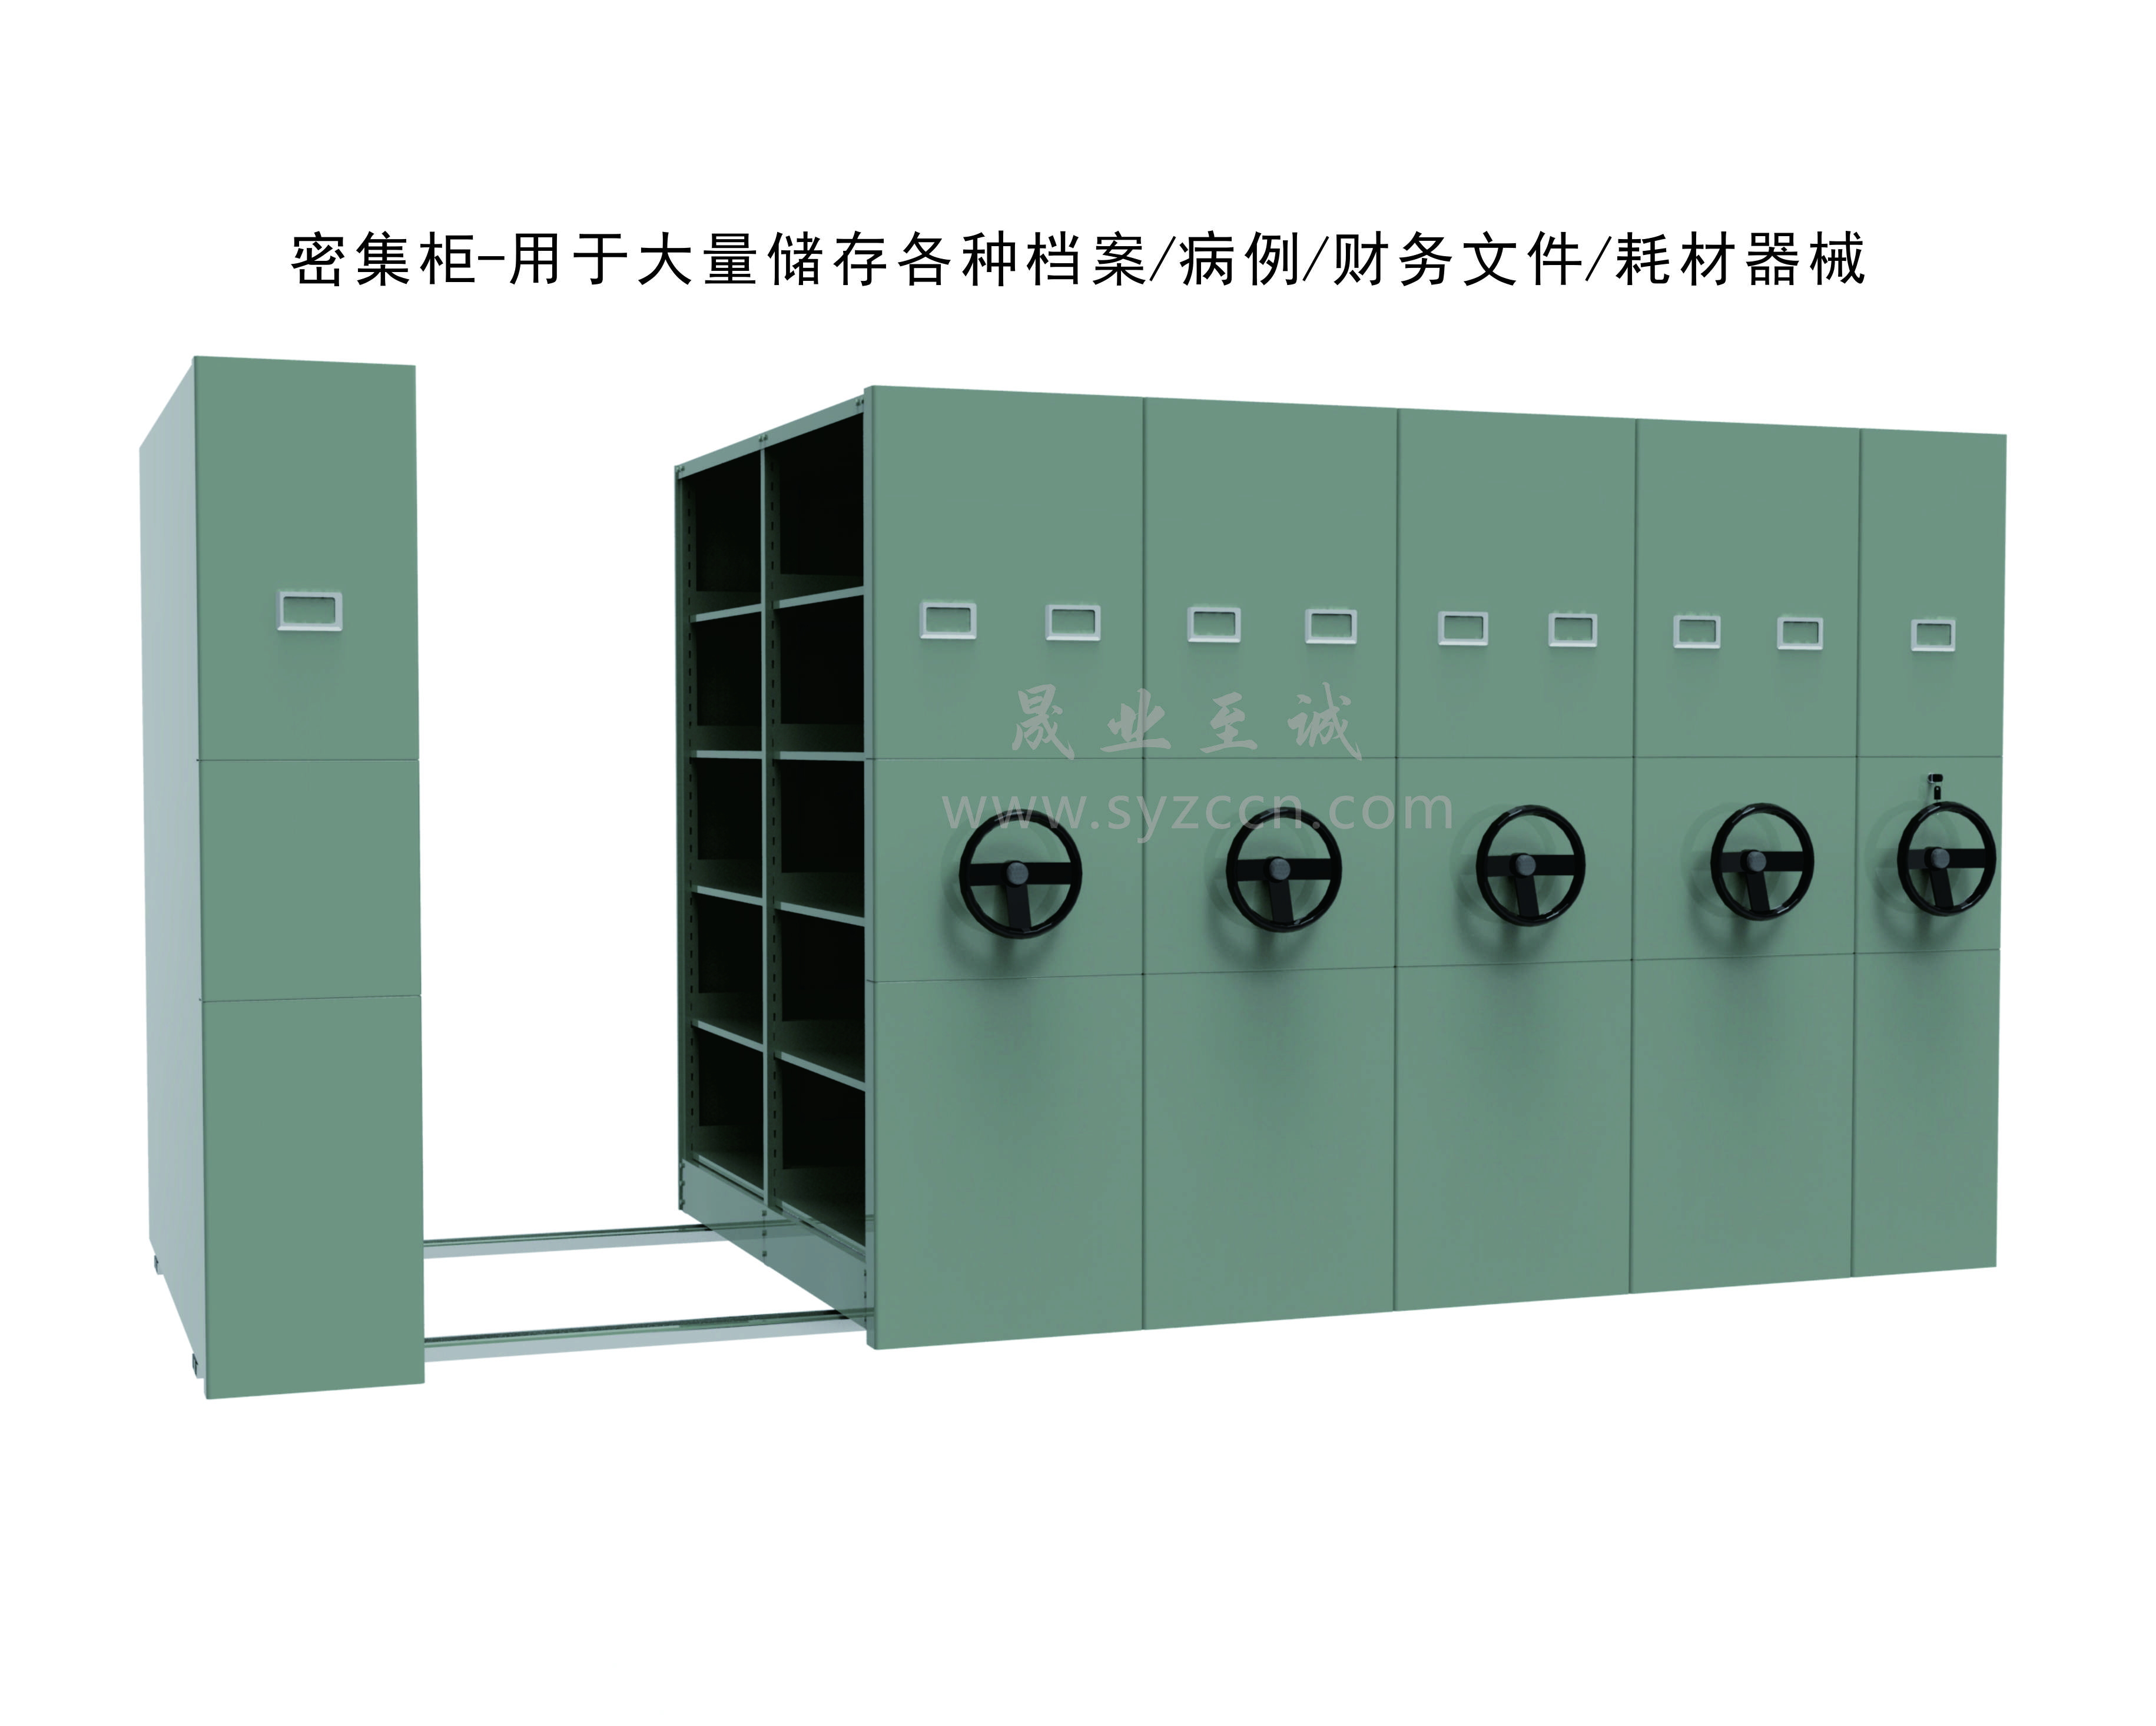 多功能储物柜架-产品图集(图23)